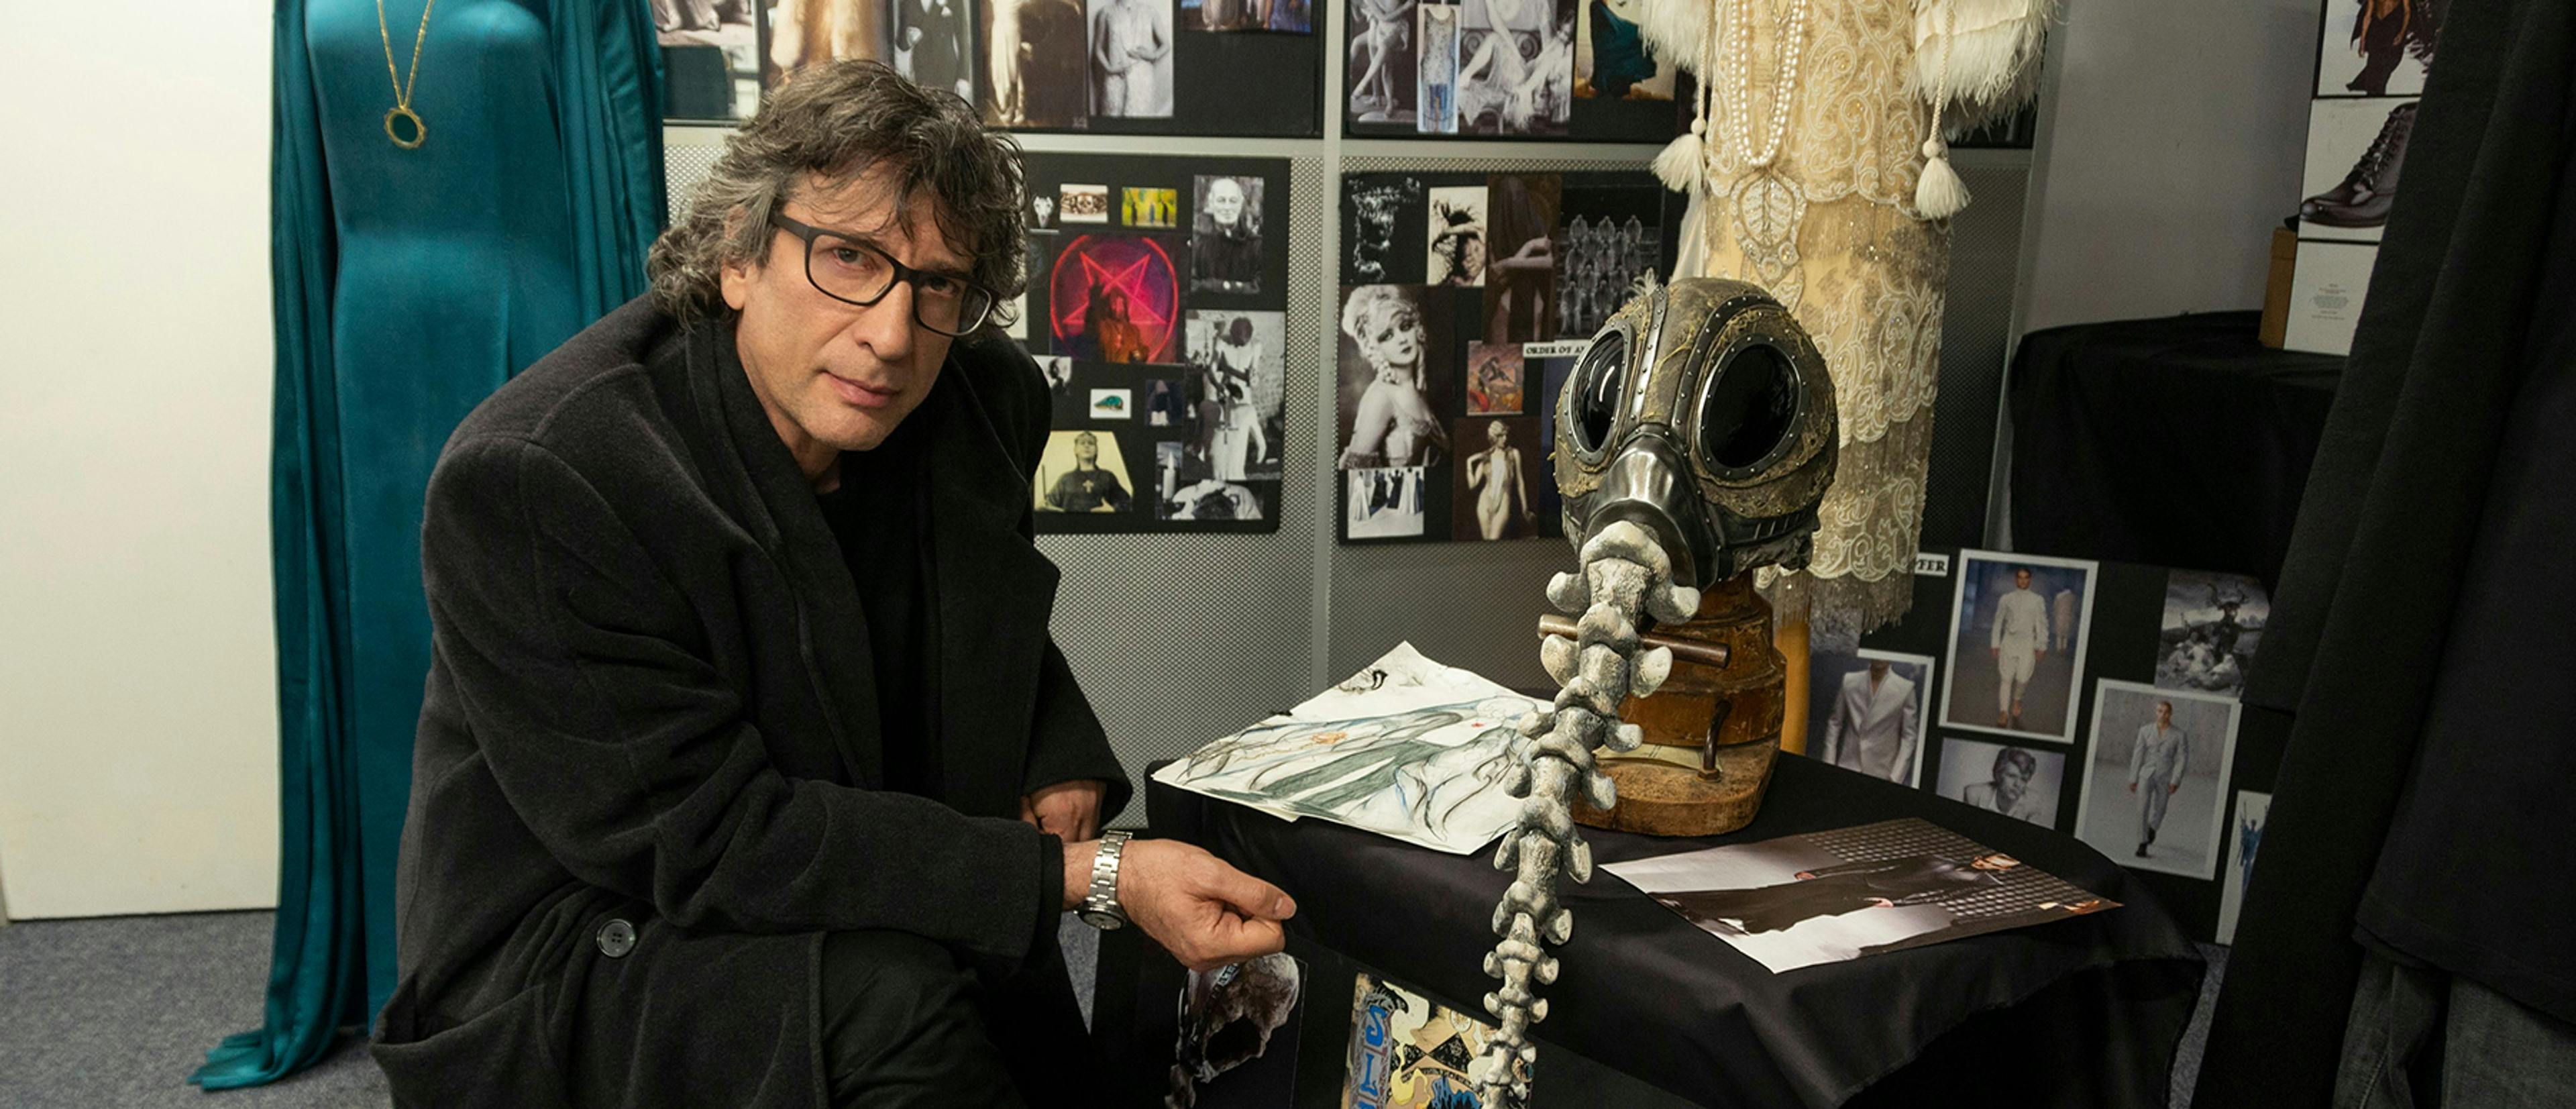 Fotografía de Neil Gaiman en la adapación de su obra 'The Sandman'